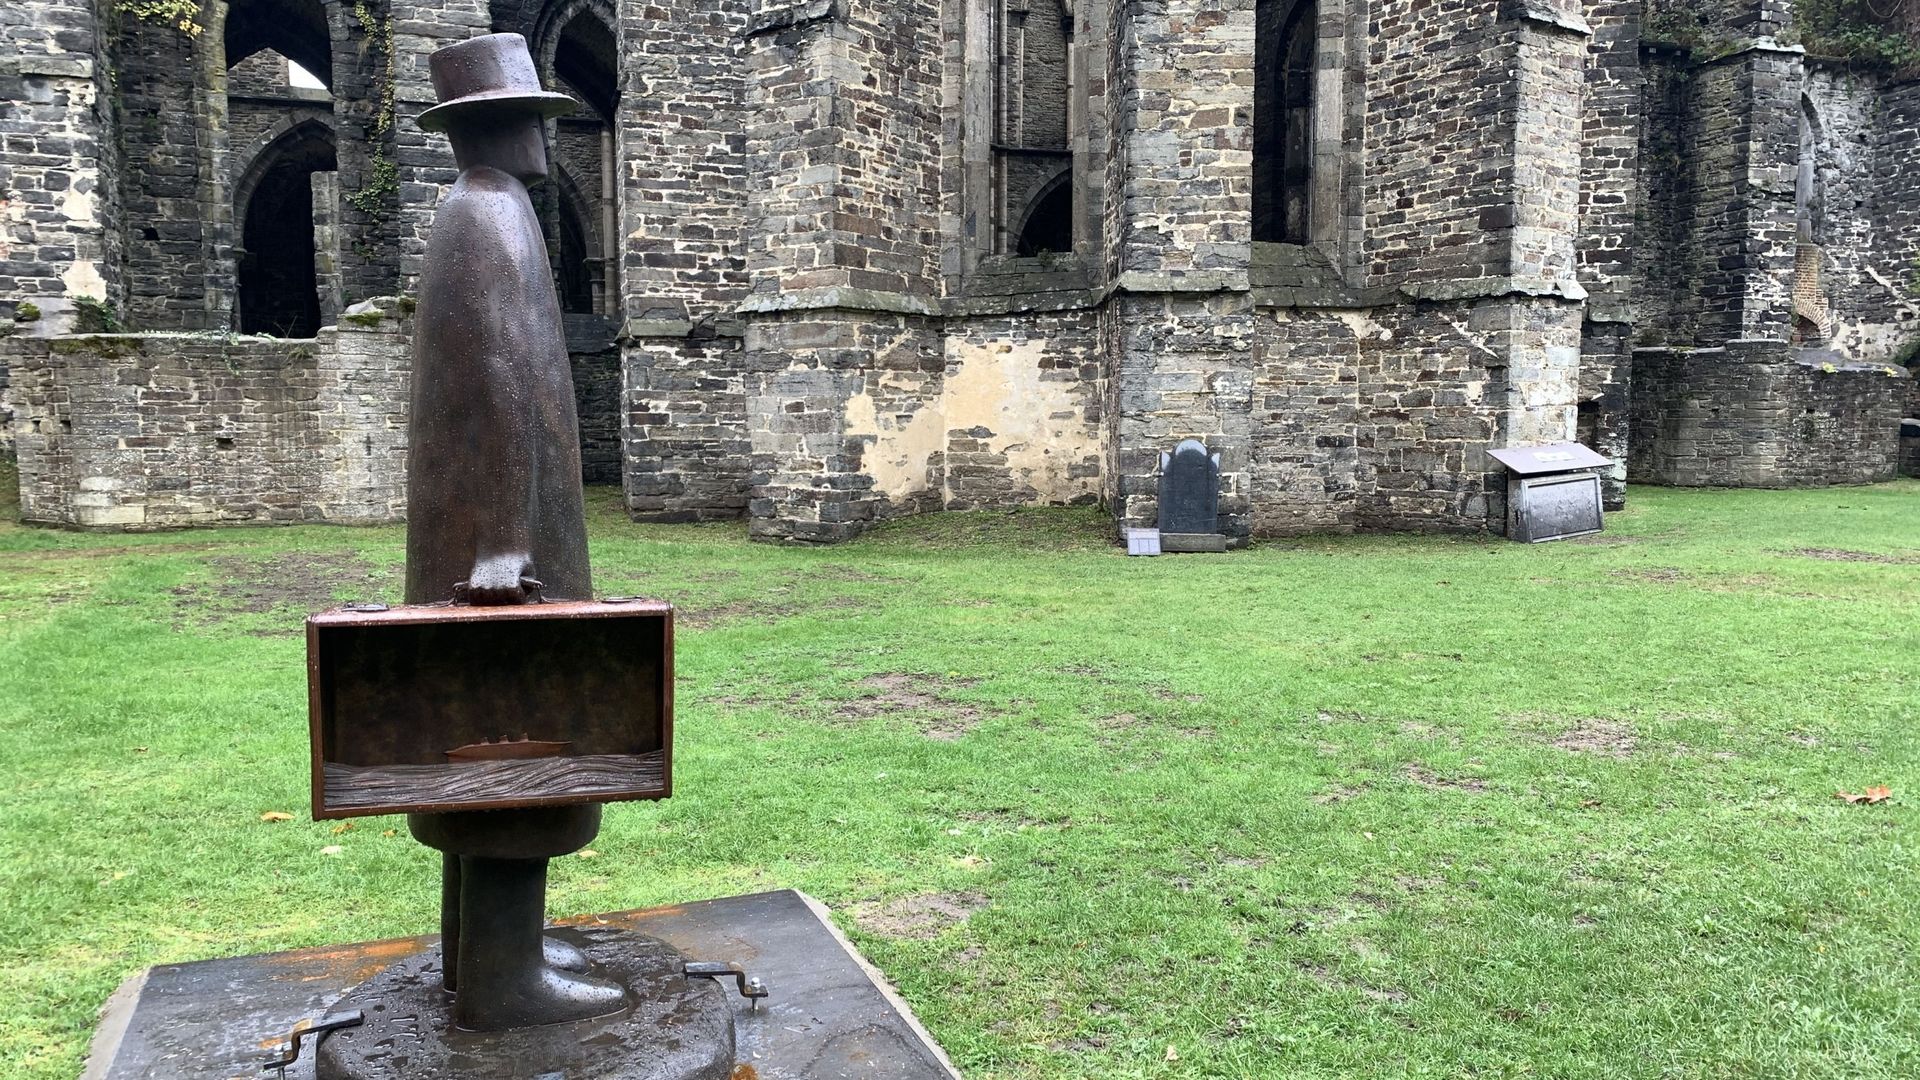 L’exposition 'Folon. Les sculptures à l’abbaye", avec des sculptures de Jean-Michel Folon à l’abbaye de Villers-la-Ville, organisée par la Fondation Folon, .